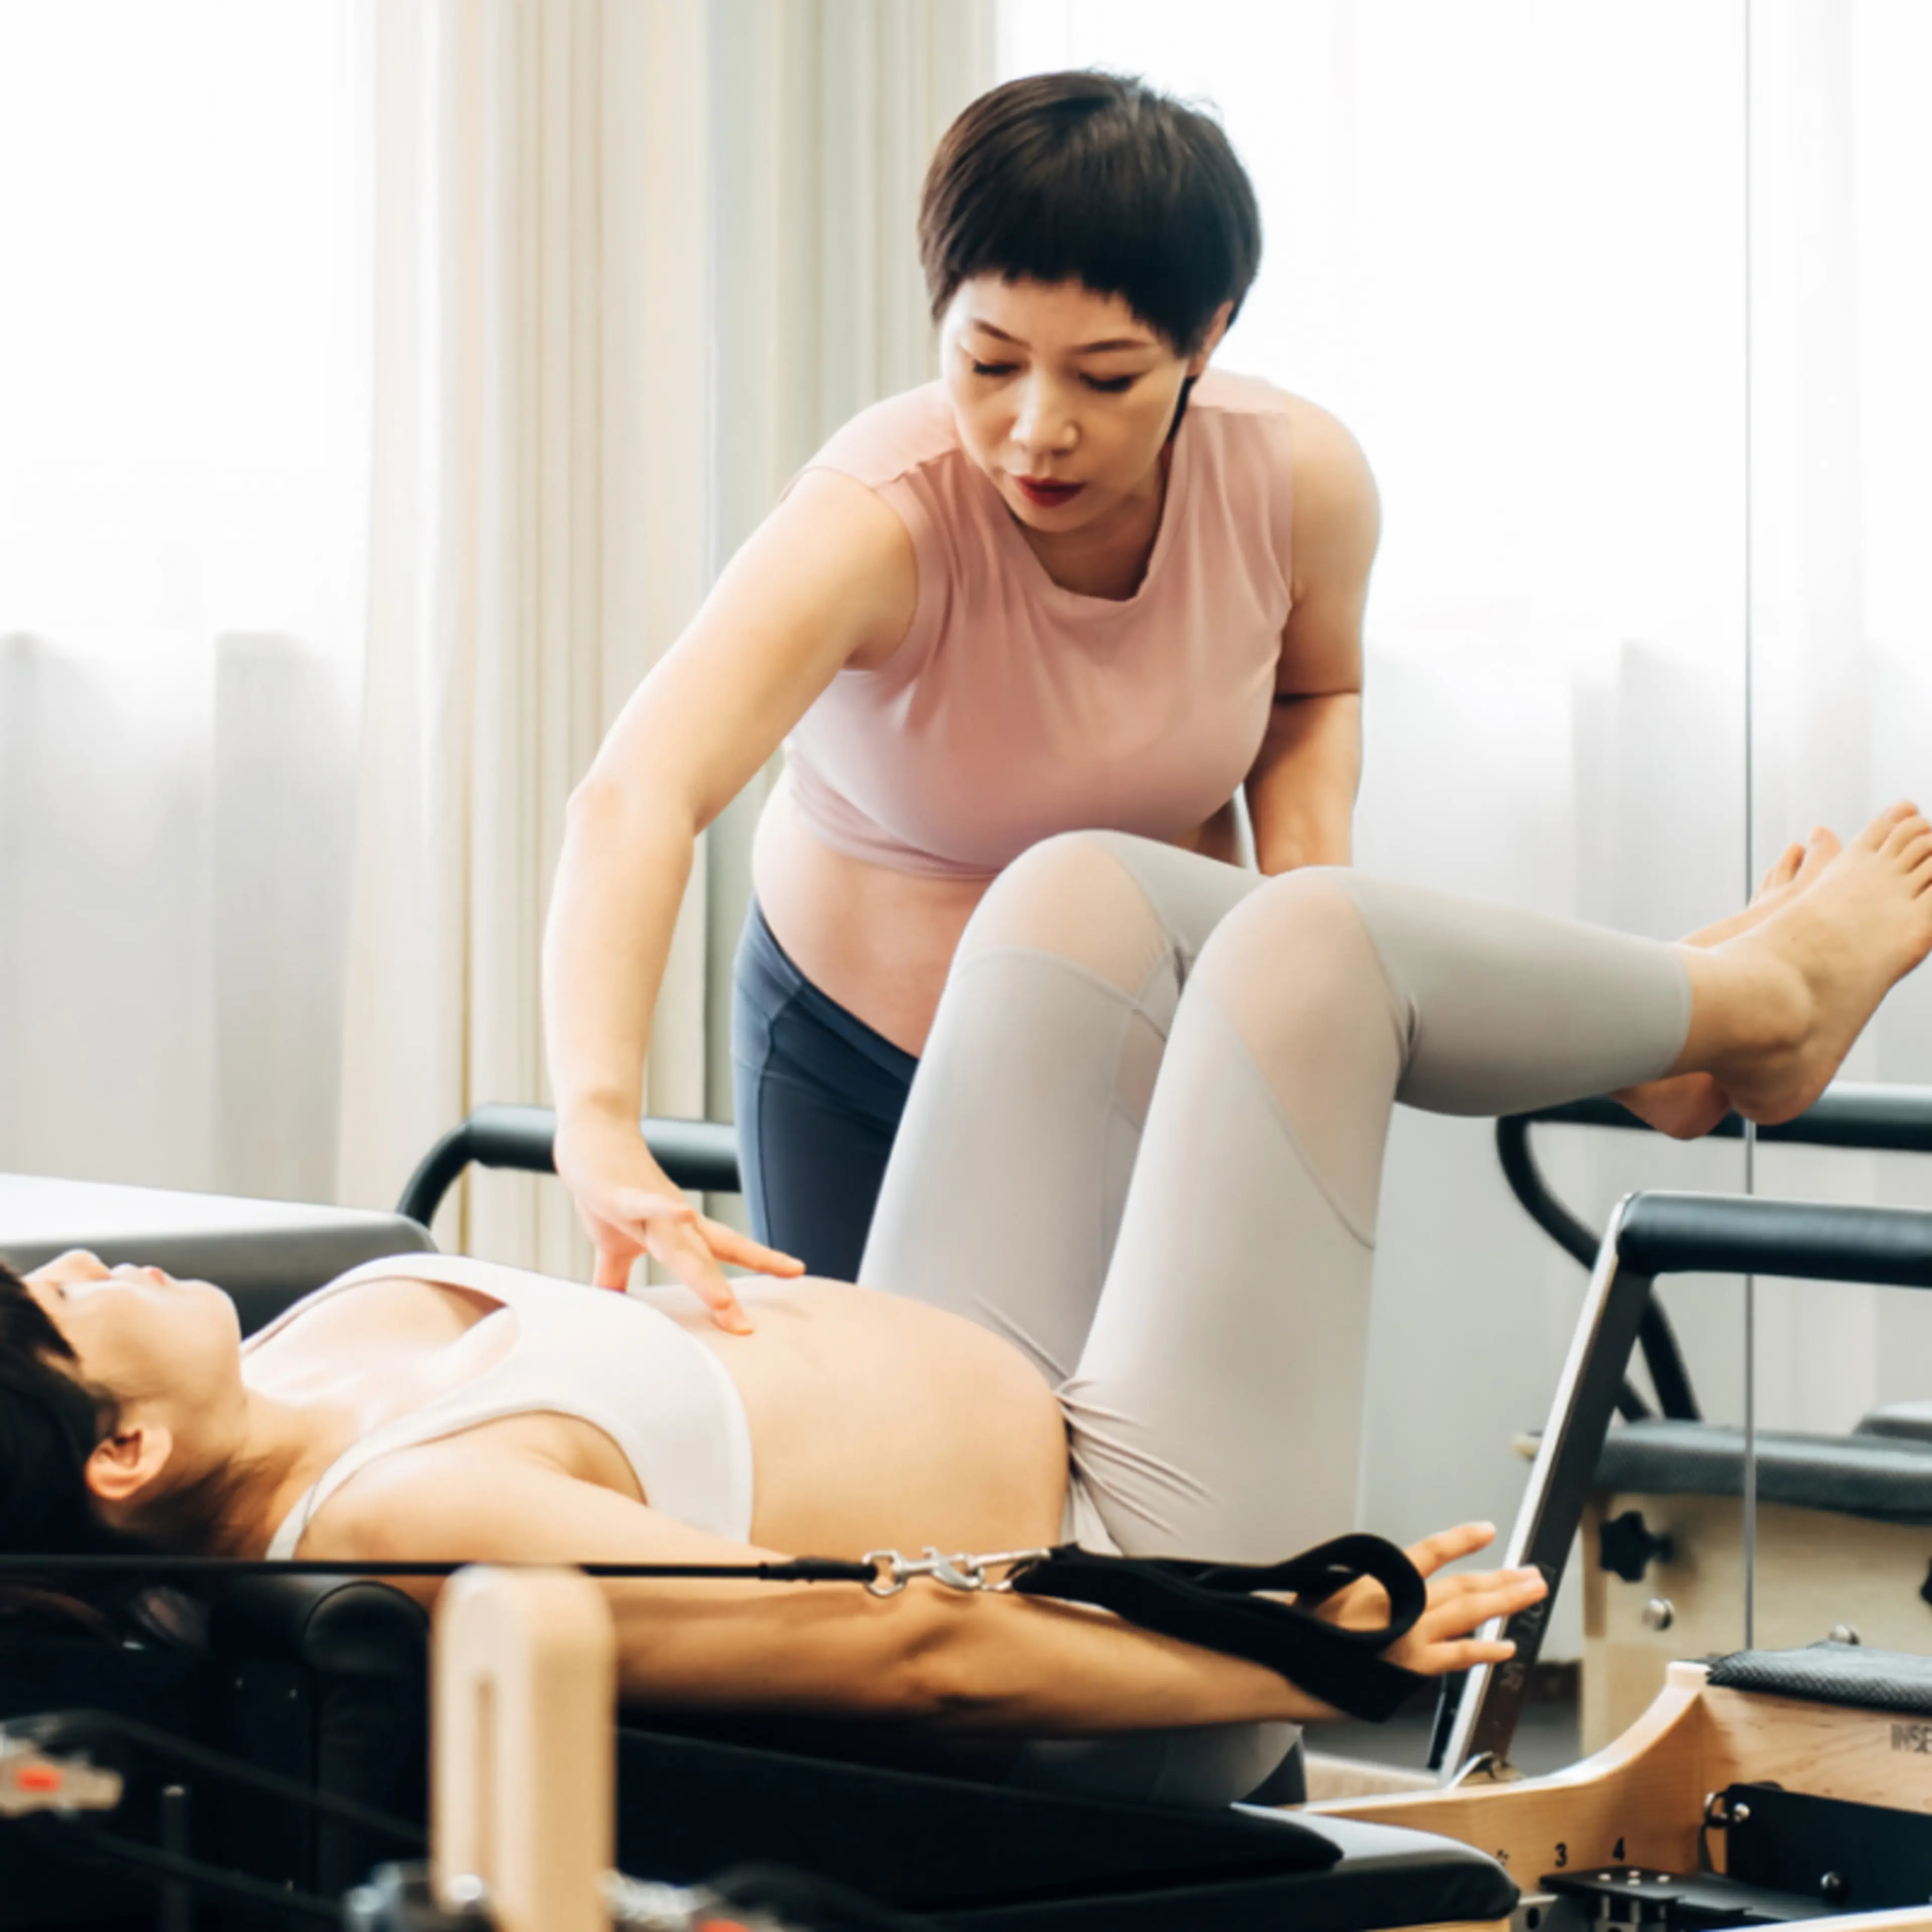 If You Have Diastasis Recti, Pilates May Help